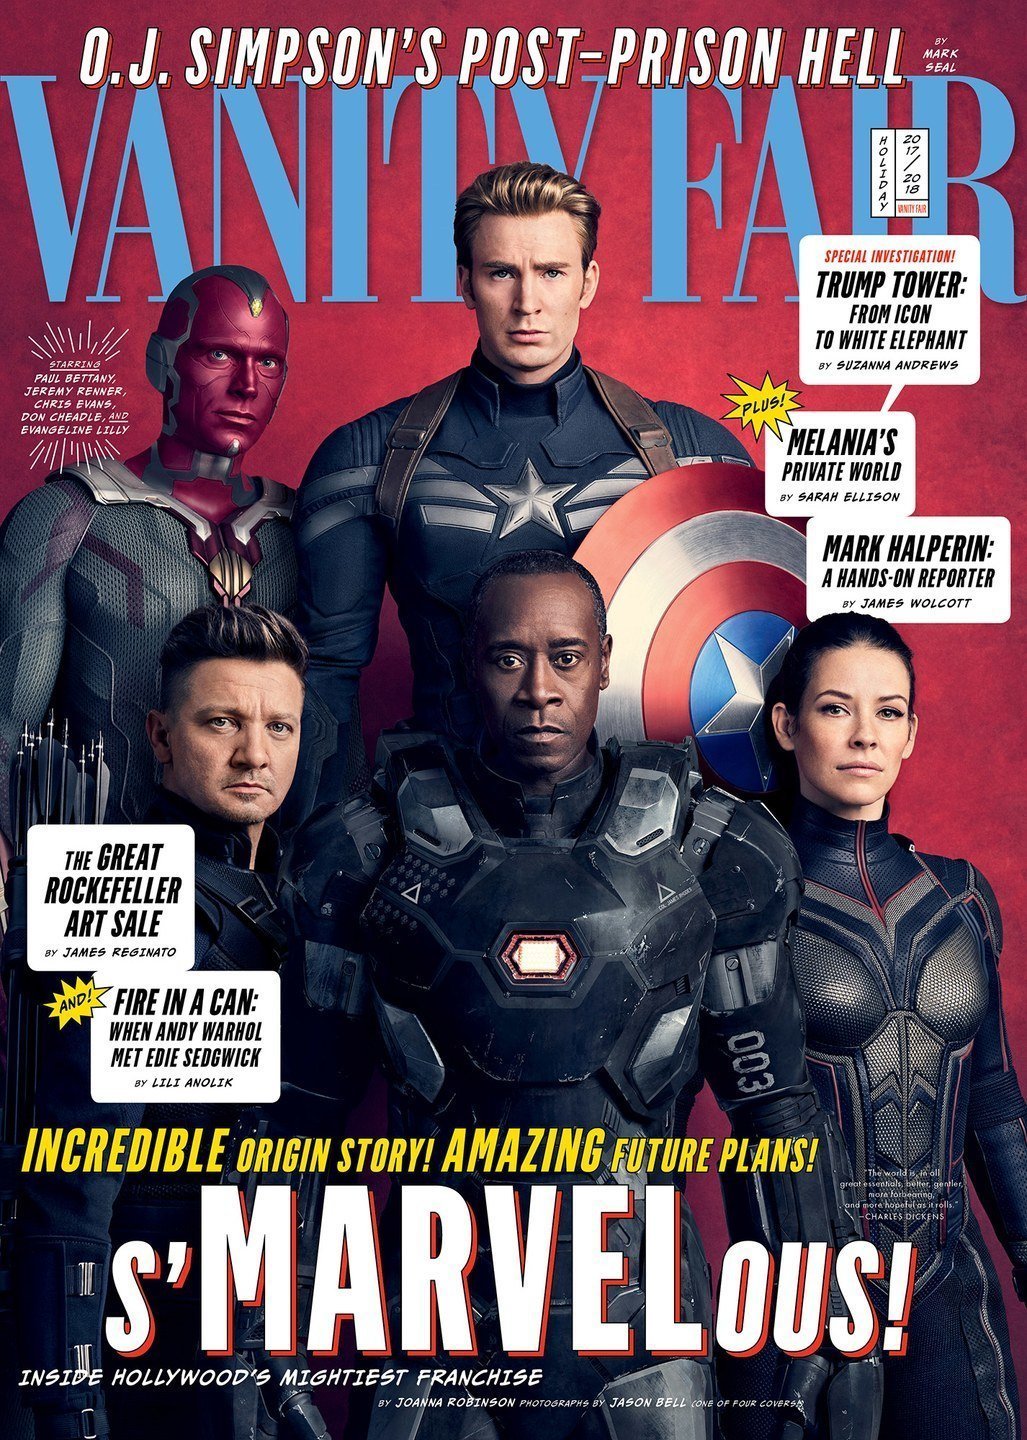 Couverture de Vanity Fair avec Captain America, Vision, Hawkeye, War Machine et The Wasp